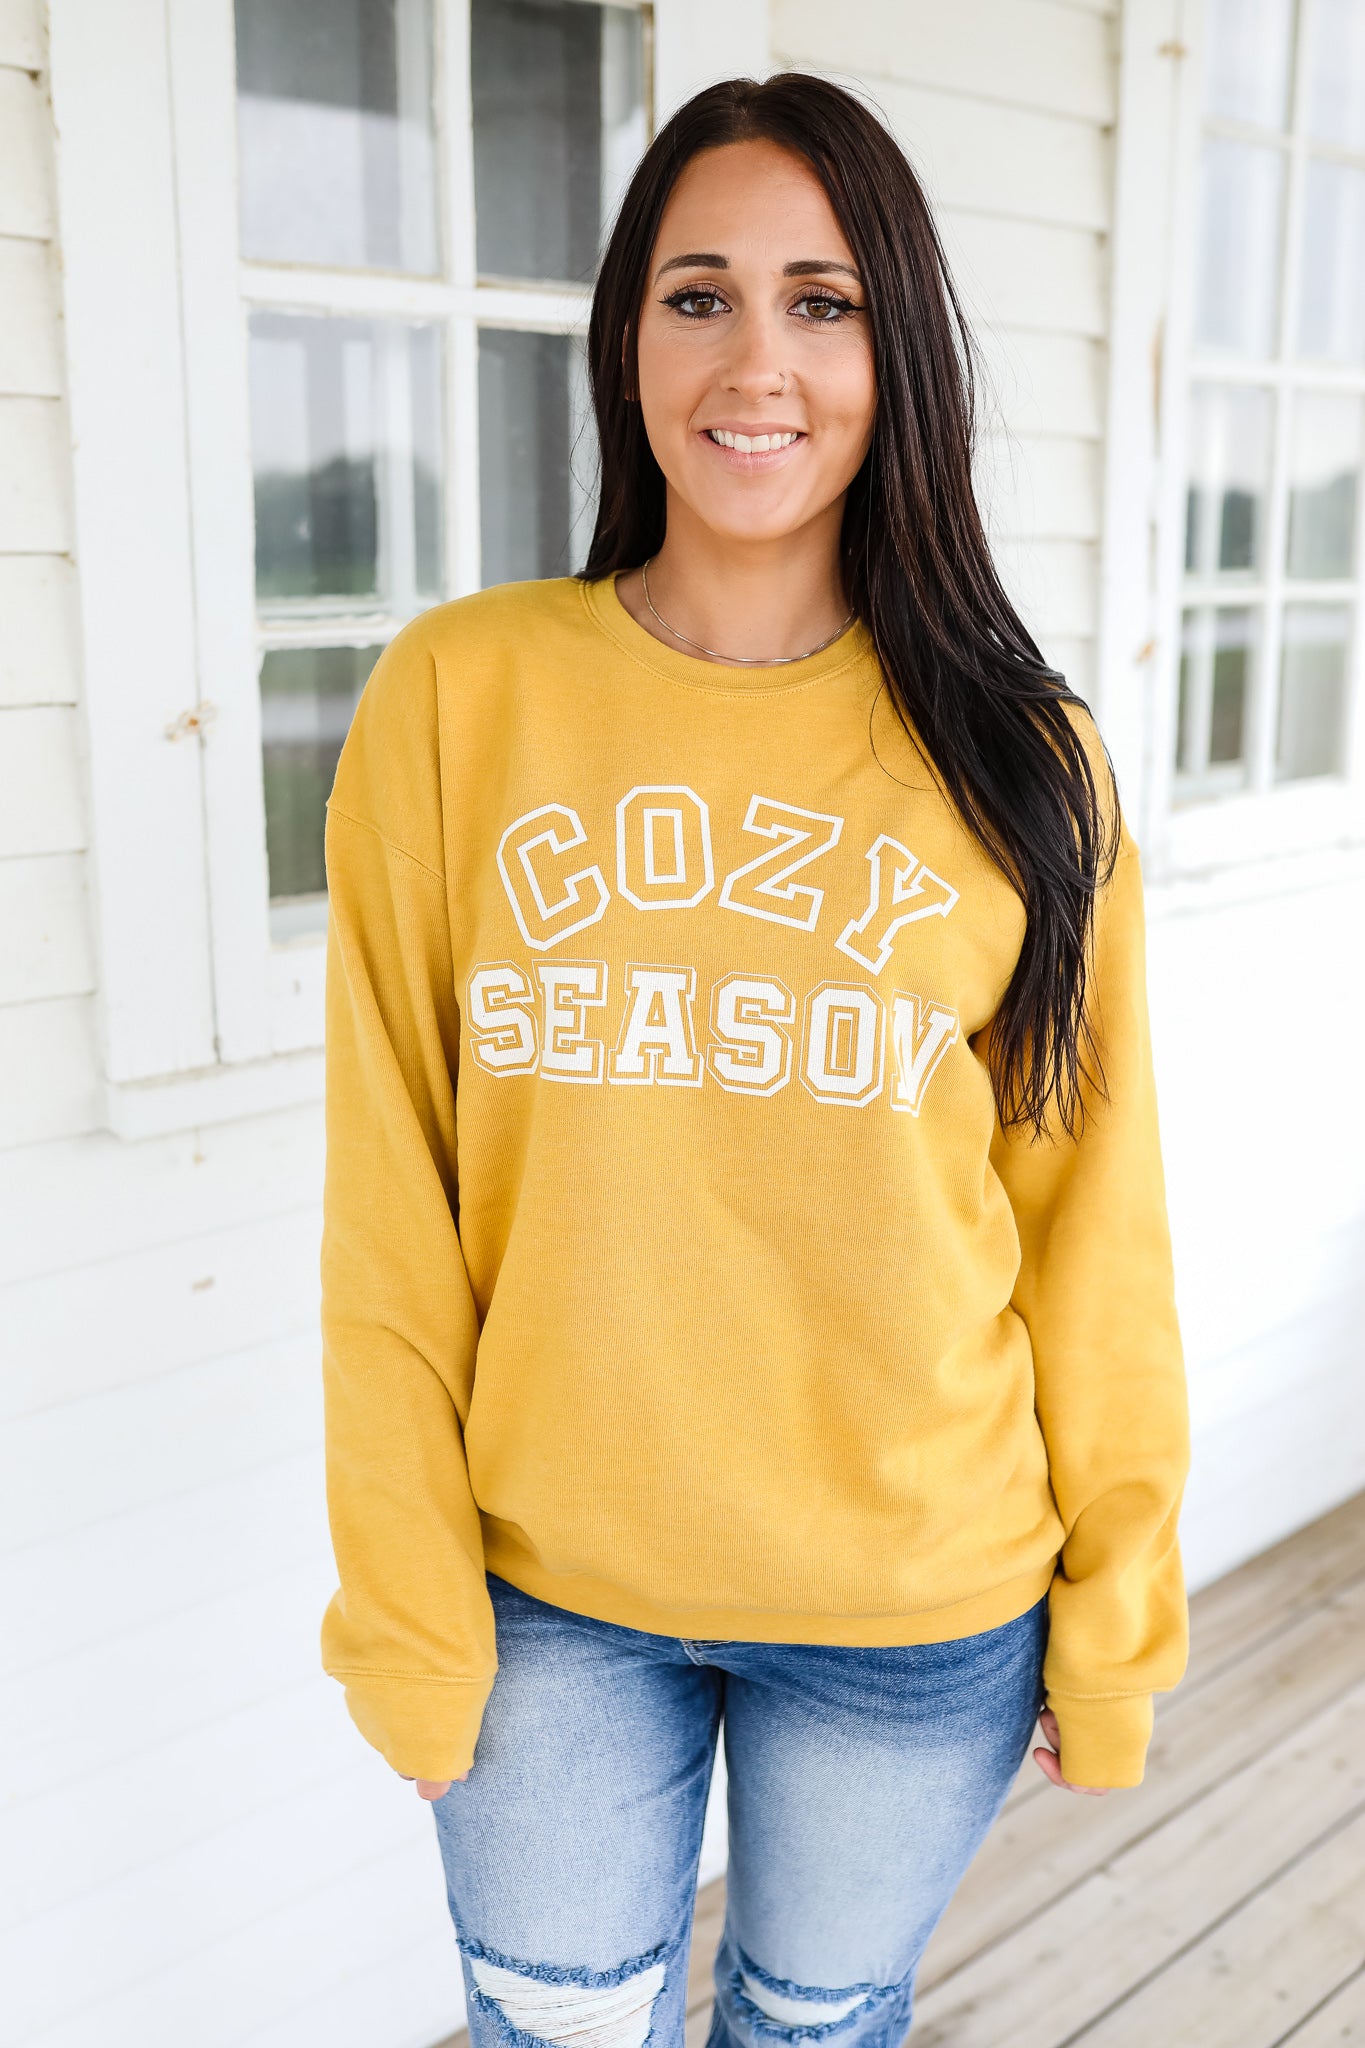 Cozy Season Crewneck Sweatshirt - Mustard